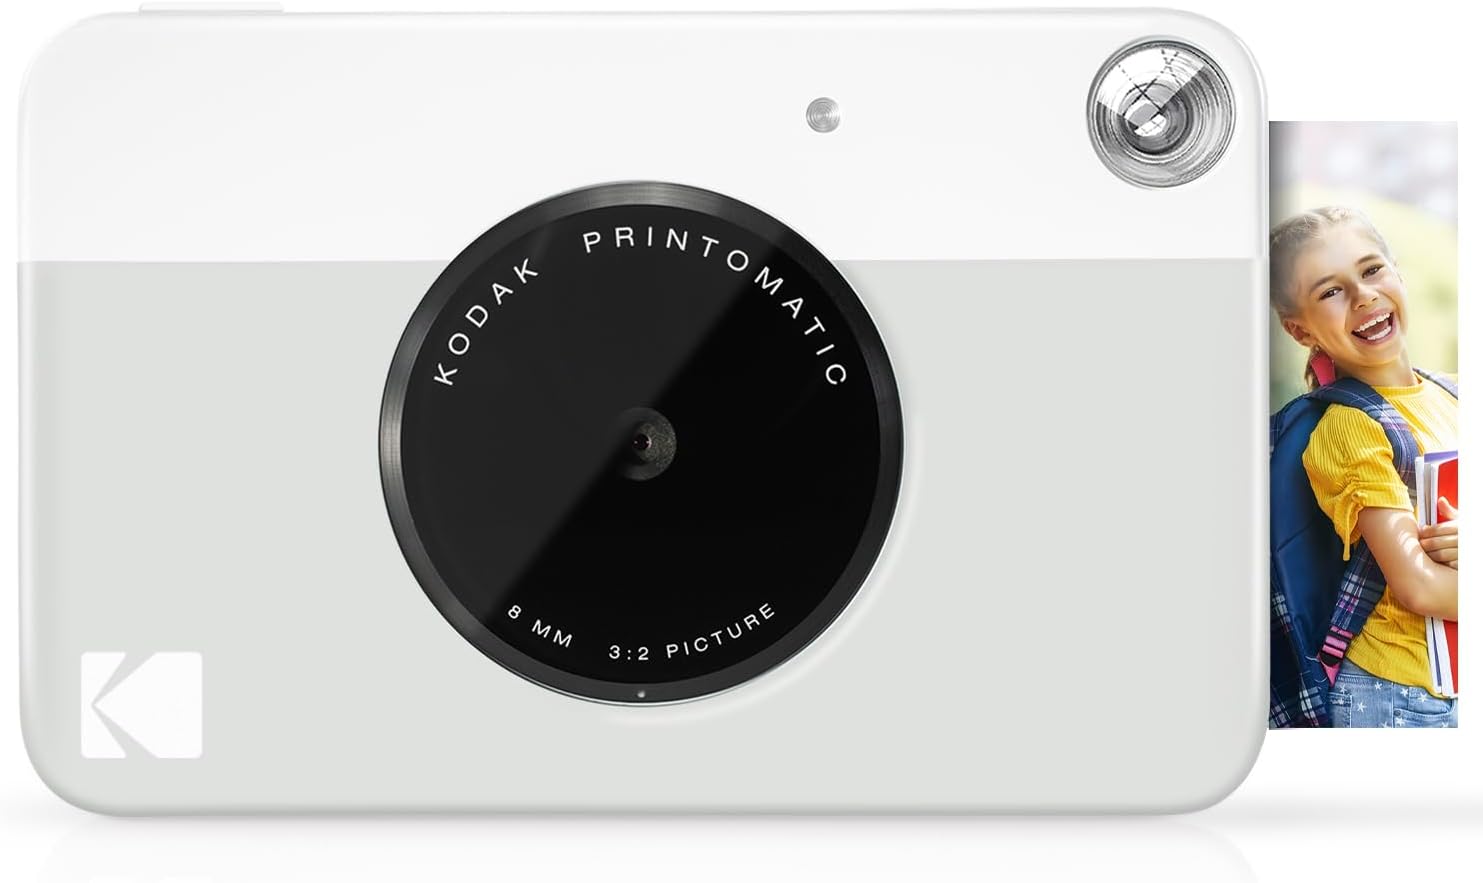 Review of KODAK Printomatic Digital Instant Print Camera